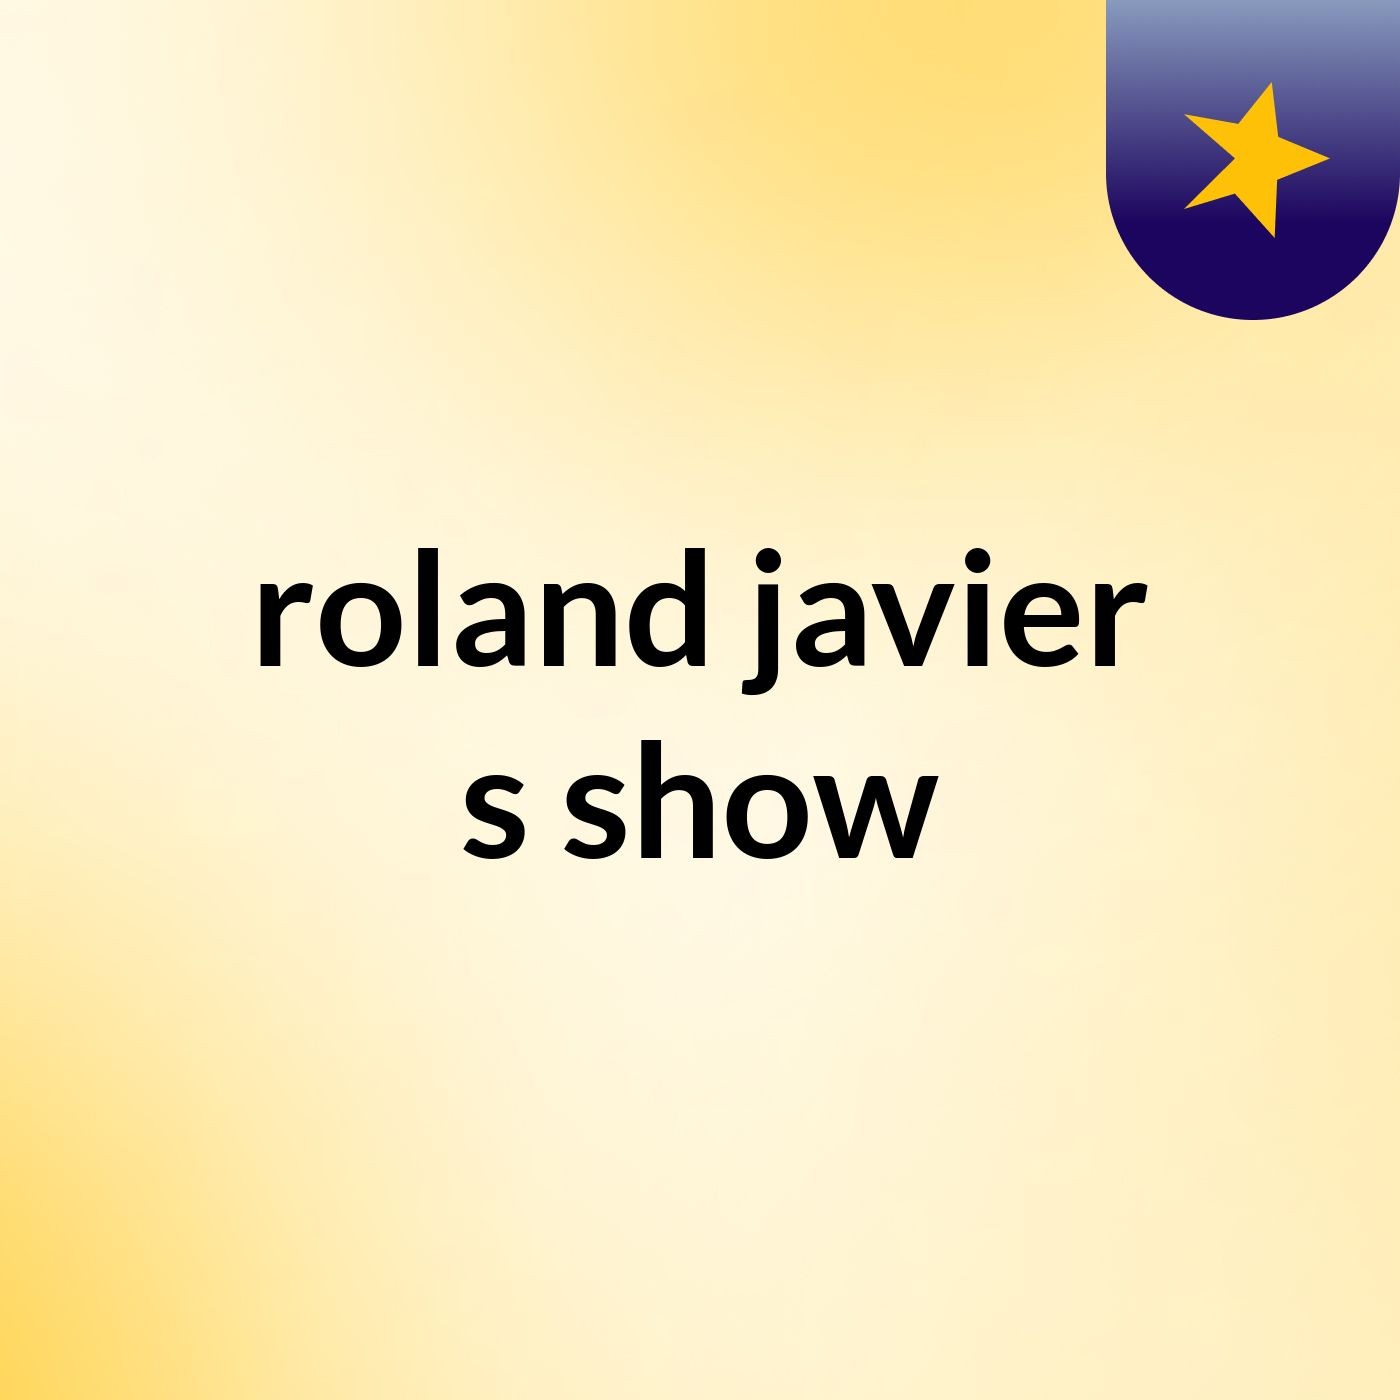 Episode 5 - roland javier's show